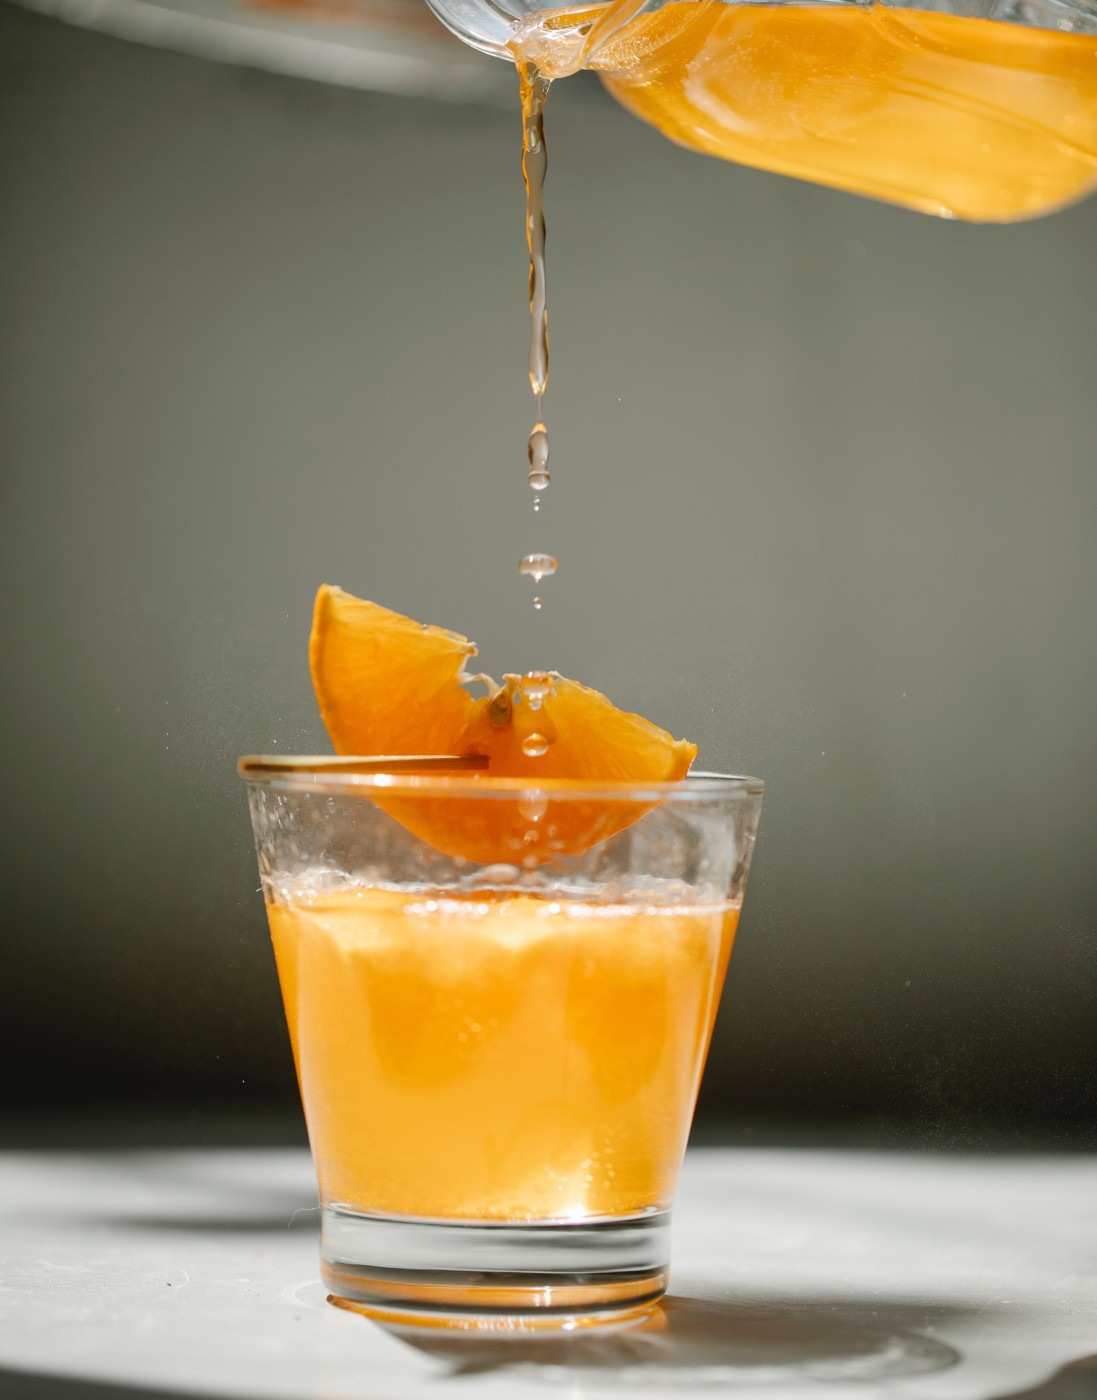 Una bibita all'arancia viene versata in un bicchiere, guarnito con una fetta d'arancia